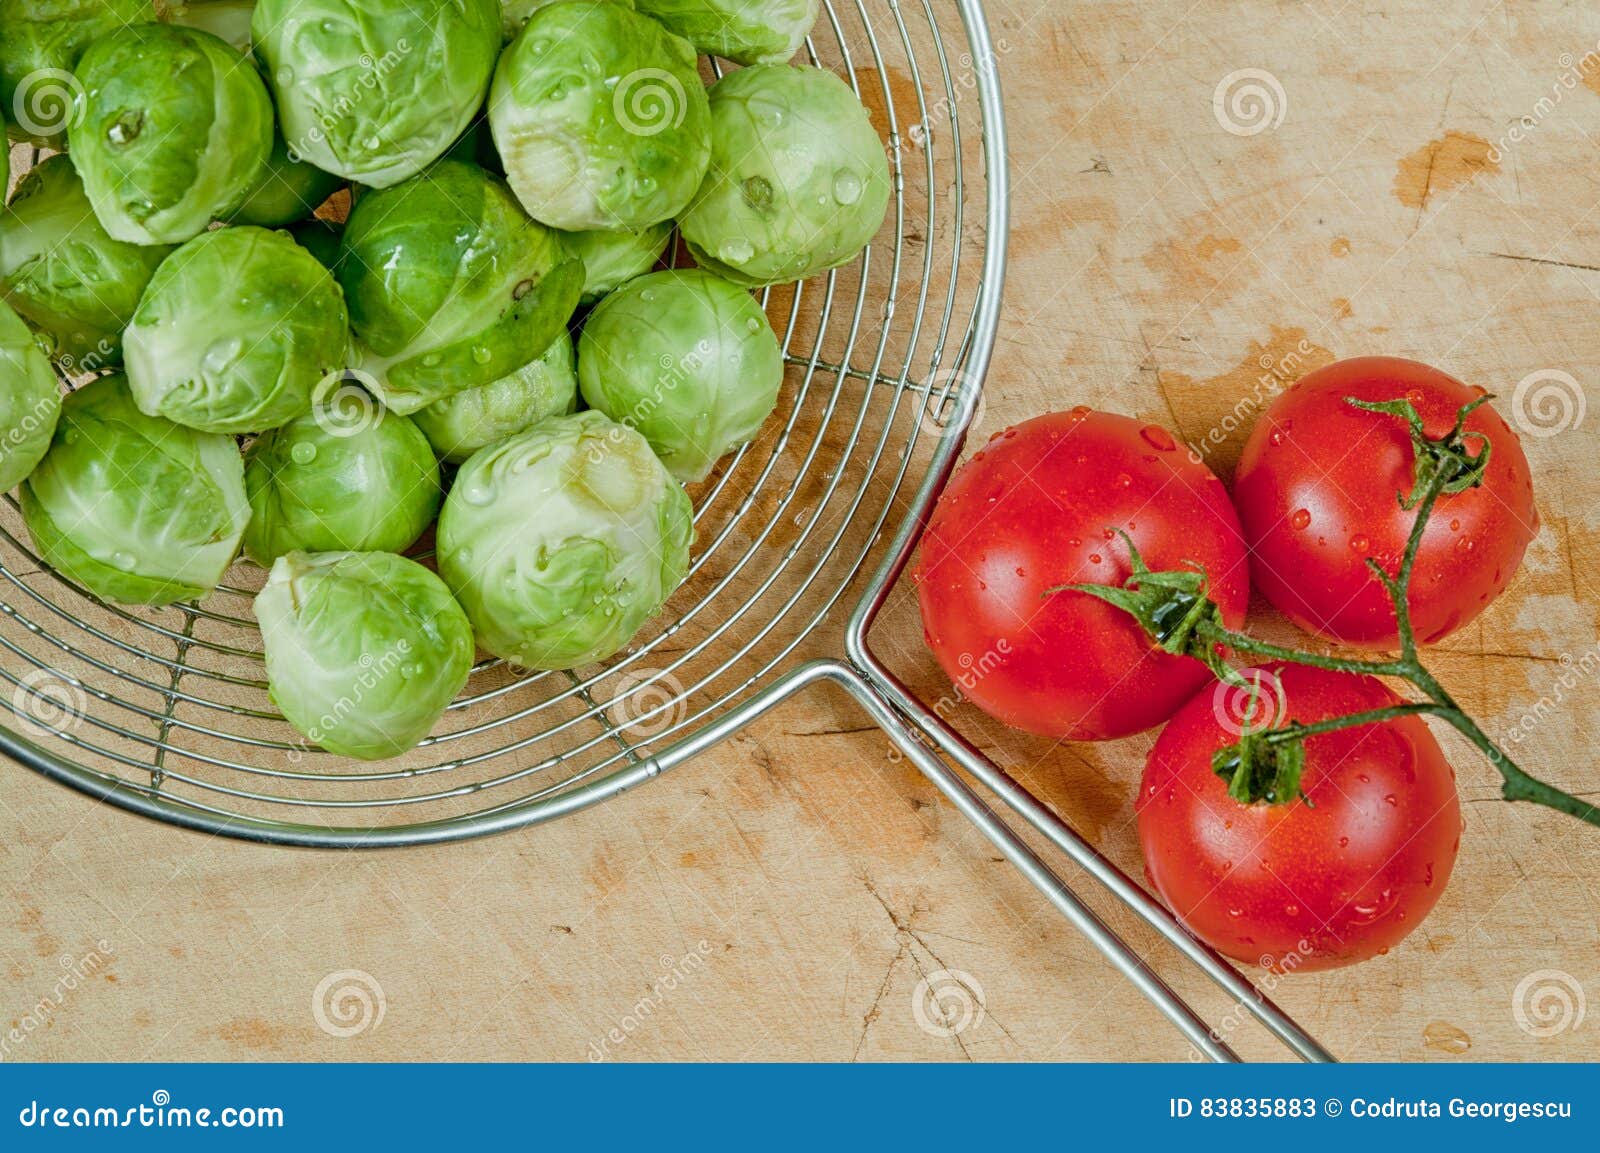 圆白菜炒西红柿怎么做_圆白菜炒西红柿的做法_豆果美食